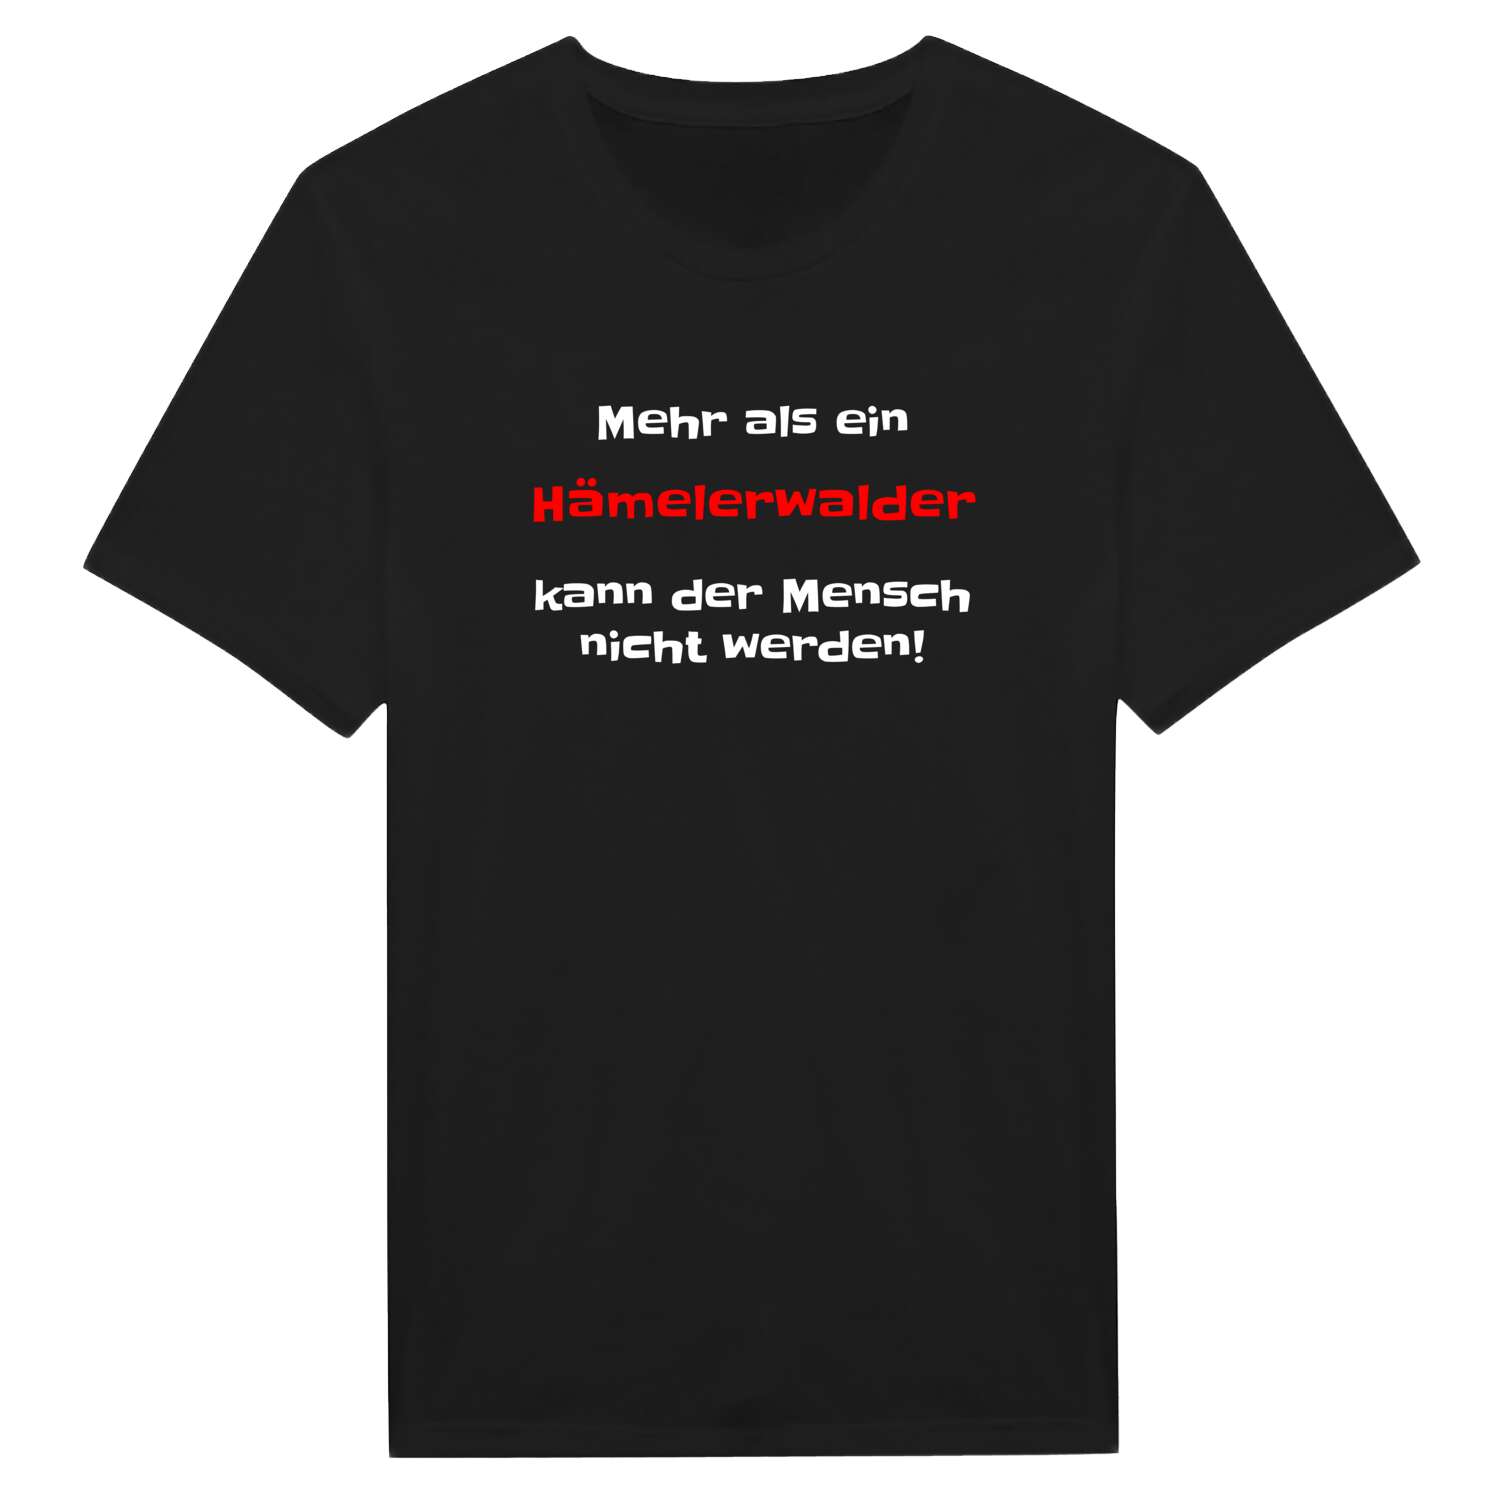 Hämelerwald T-Shirt »Mehr als ein«